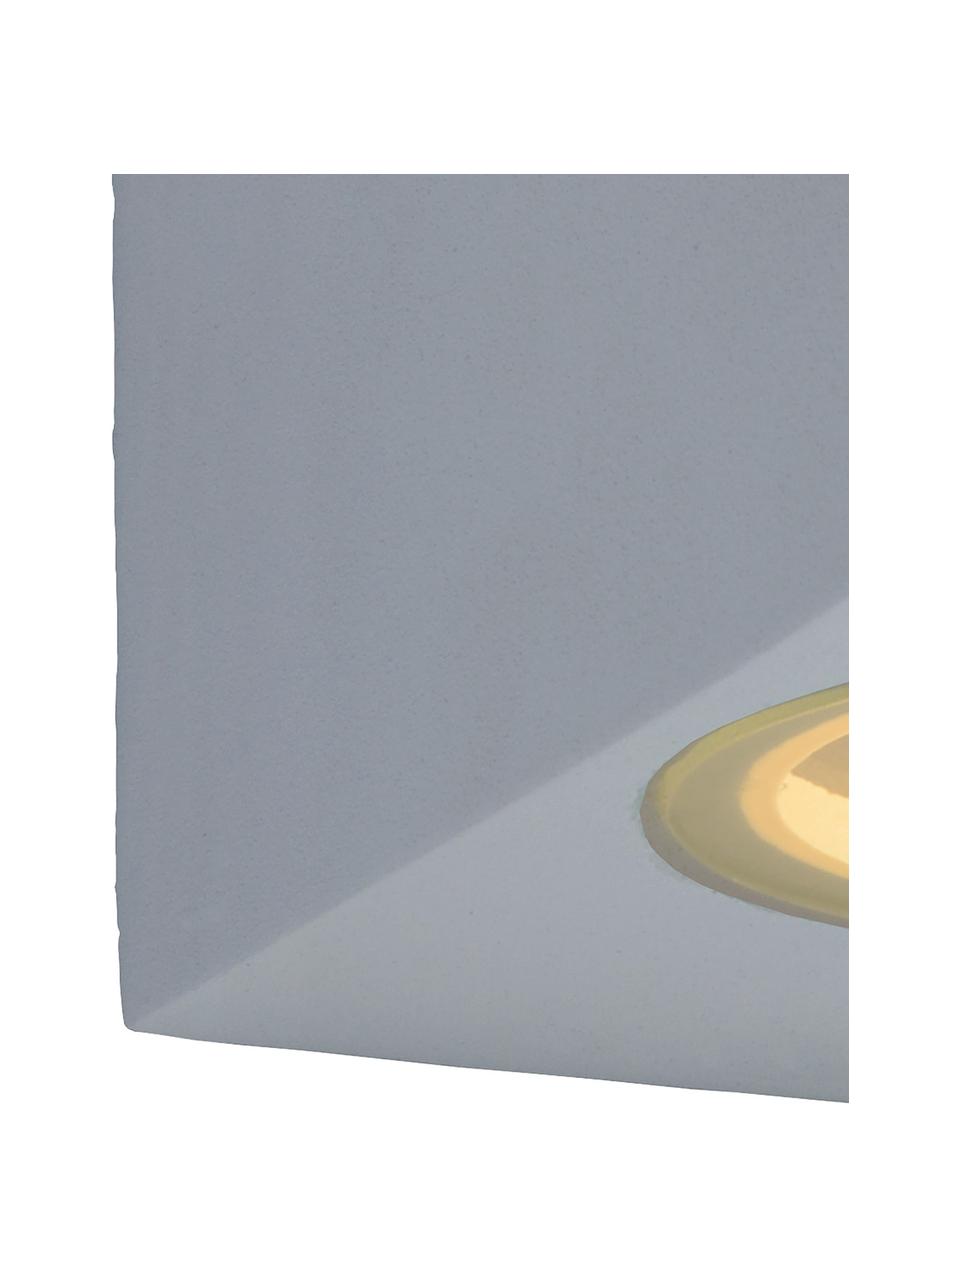 Außenwandleuchte Zora, Lampenschirm: Aluminium, beschichtet, Diffusorscheibe: Glas, Weiß, B 7 x H 8 cm